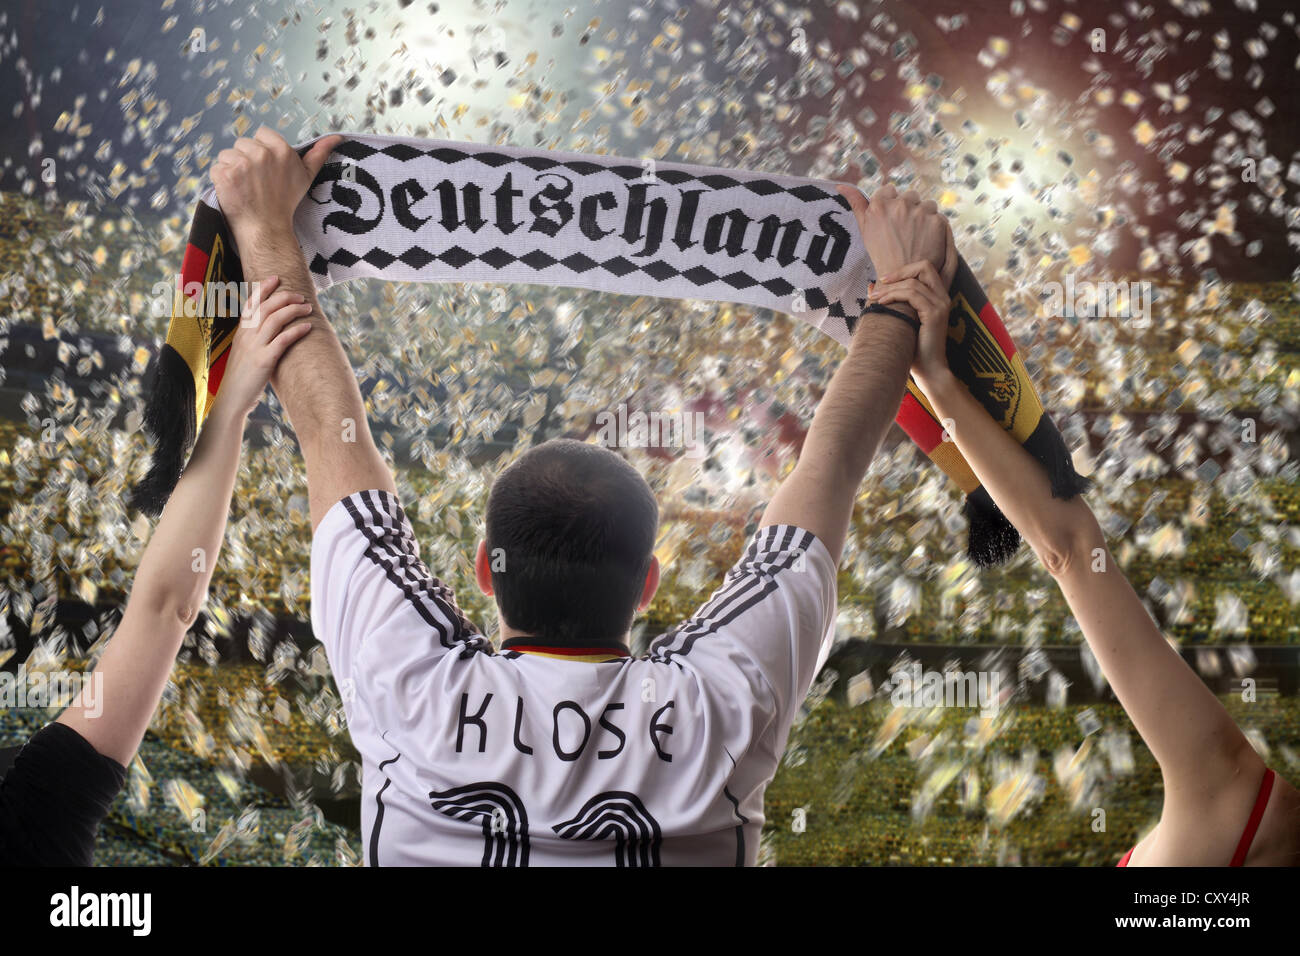 Football fan brandissant une écharpe de supporters allemands, vu de  derrière, avec les confettis dans un stade de football Photo Stock - Alamy